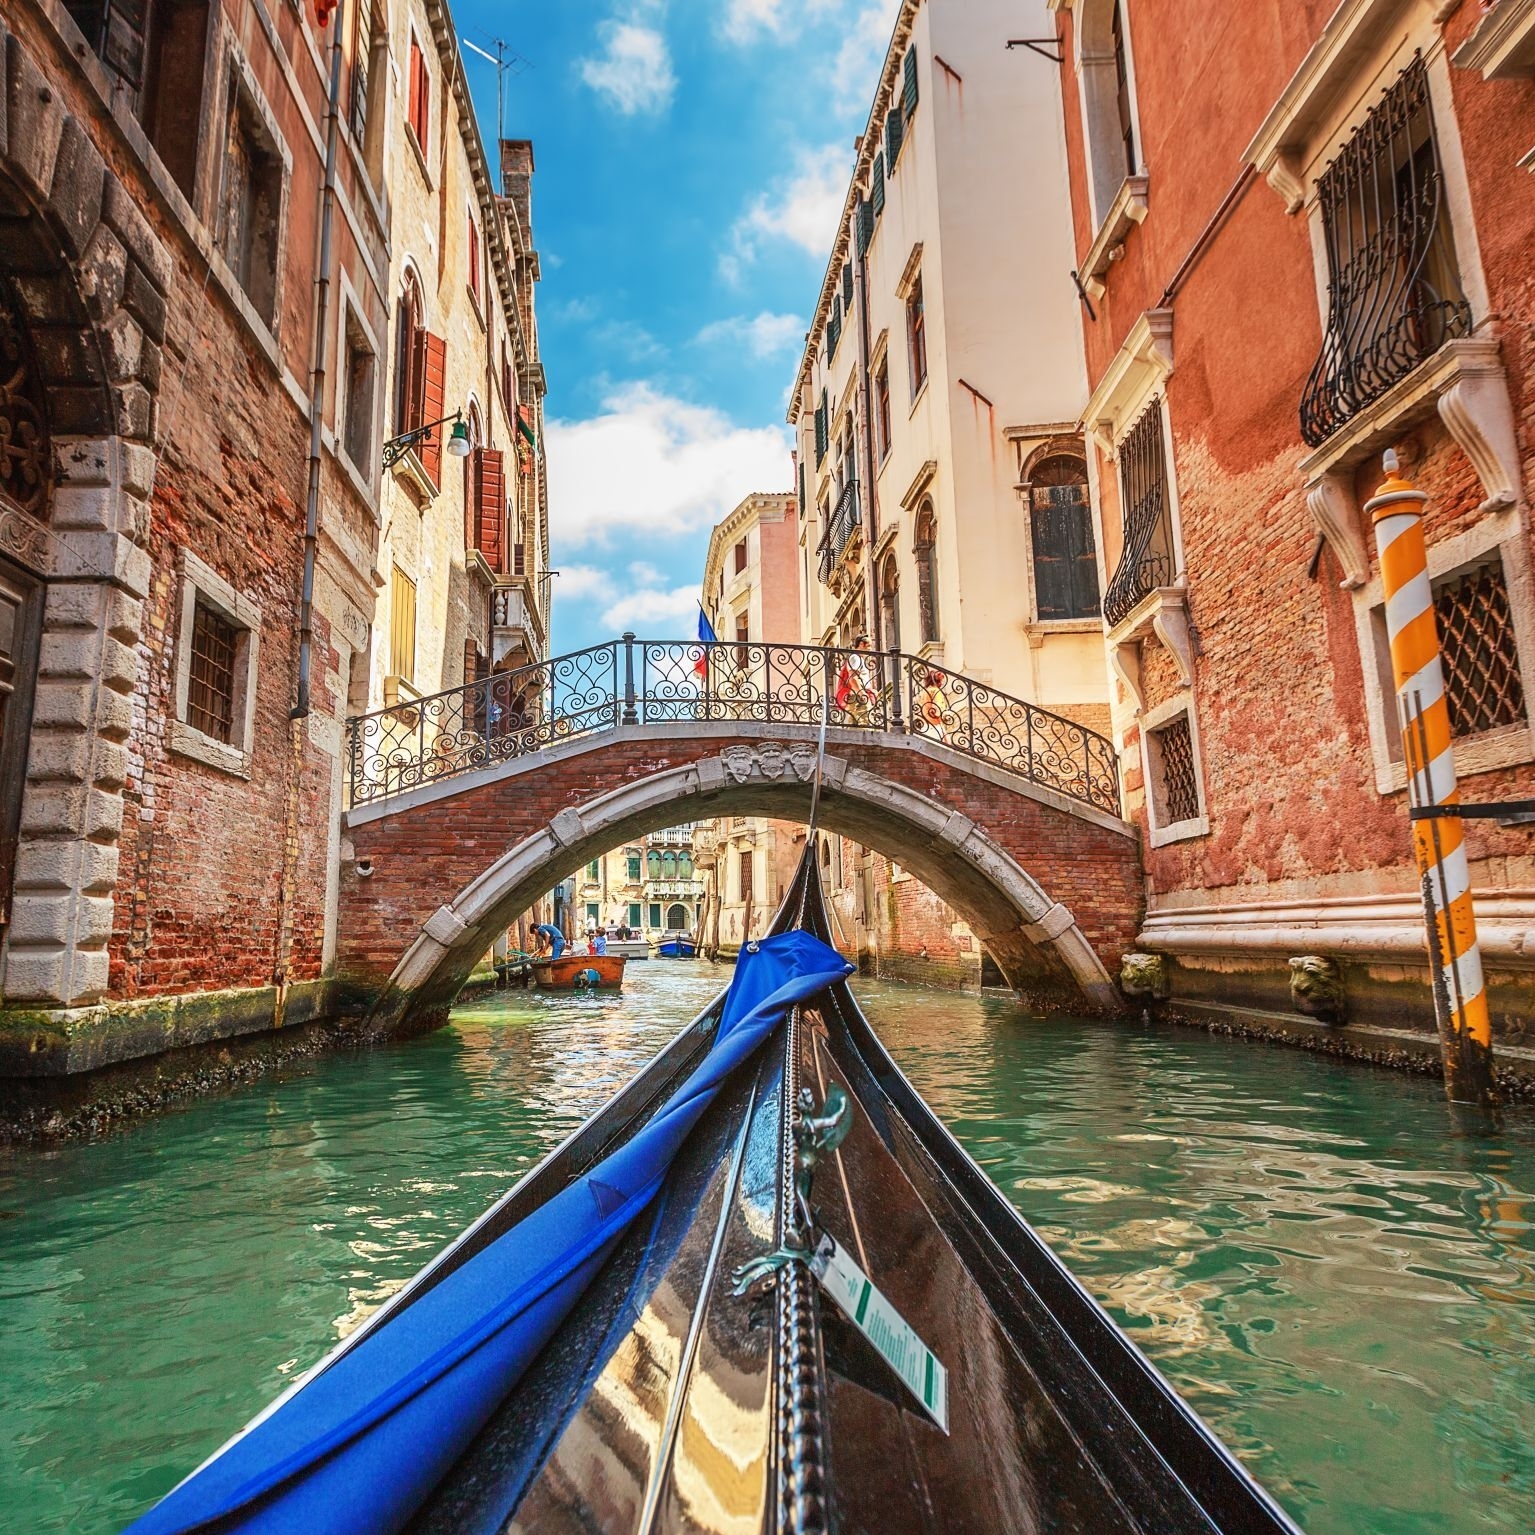 Ansicht aus einer Gondel während der Bootsfahrt durch die Kanäle von Venedig